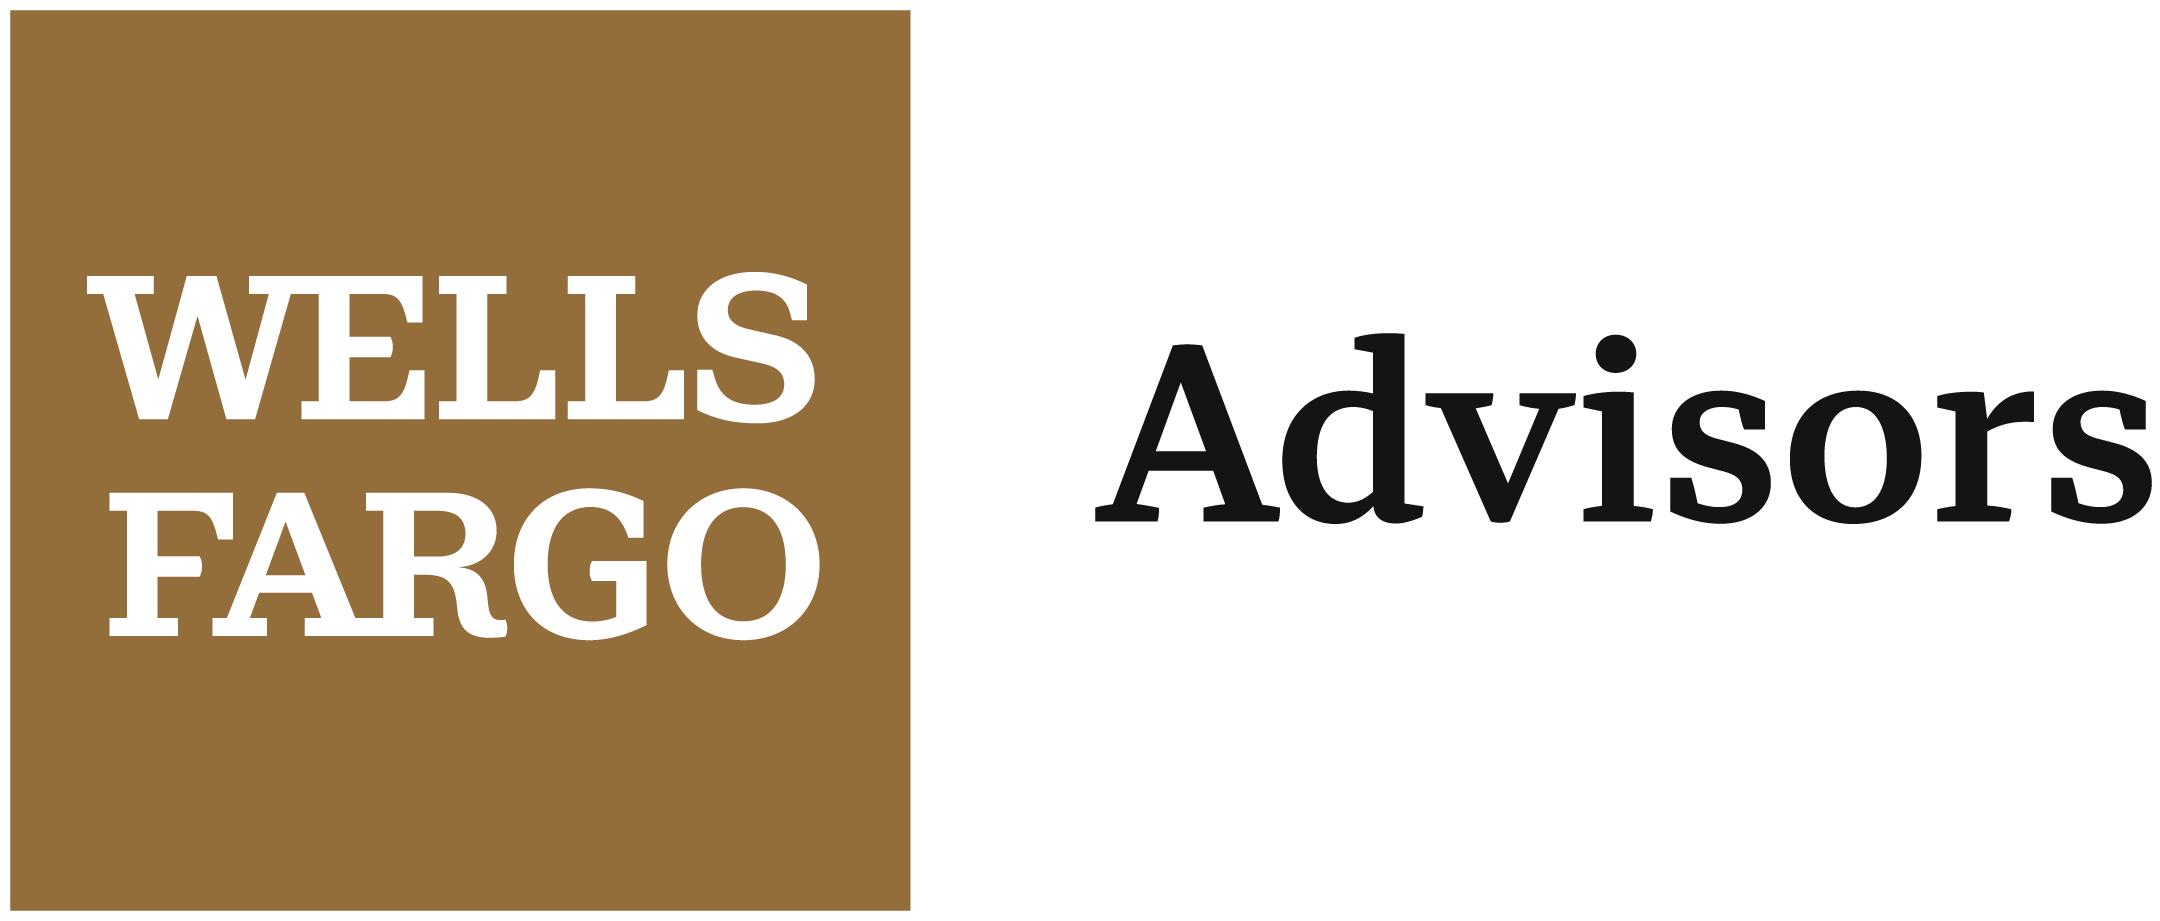 Wells Fargo Advisors